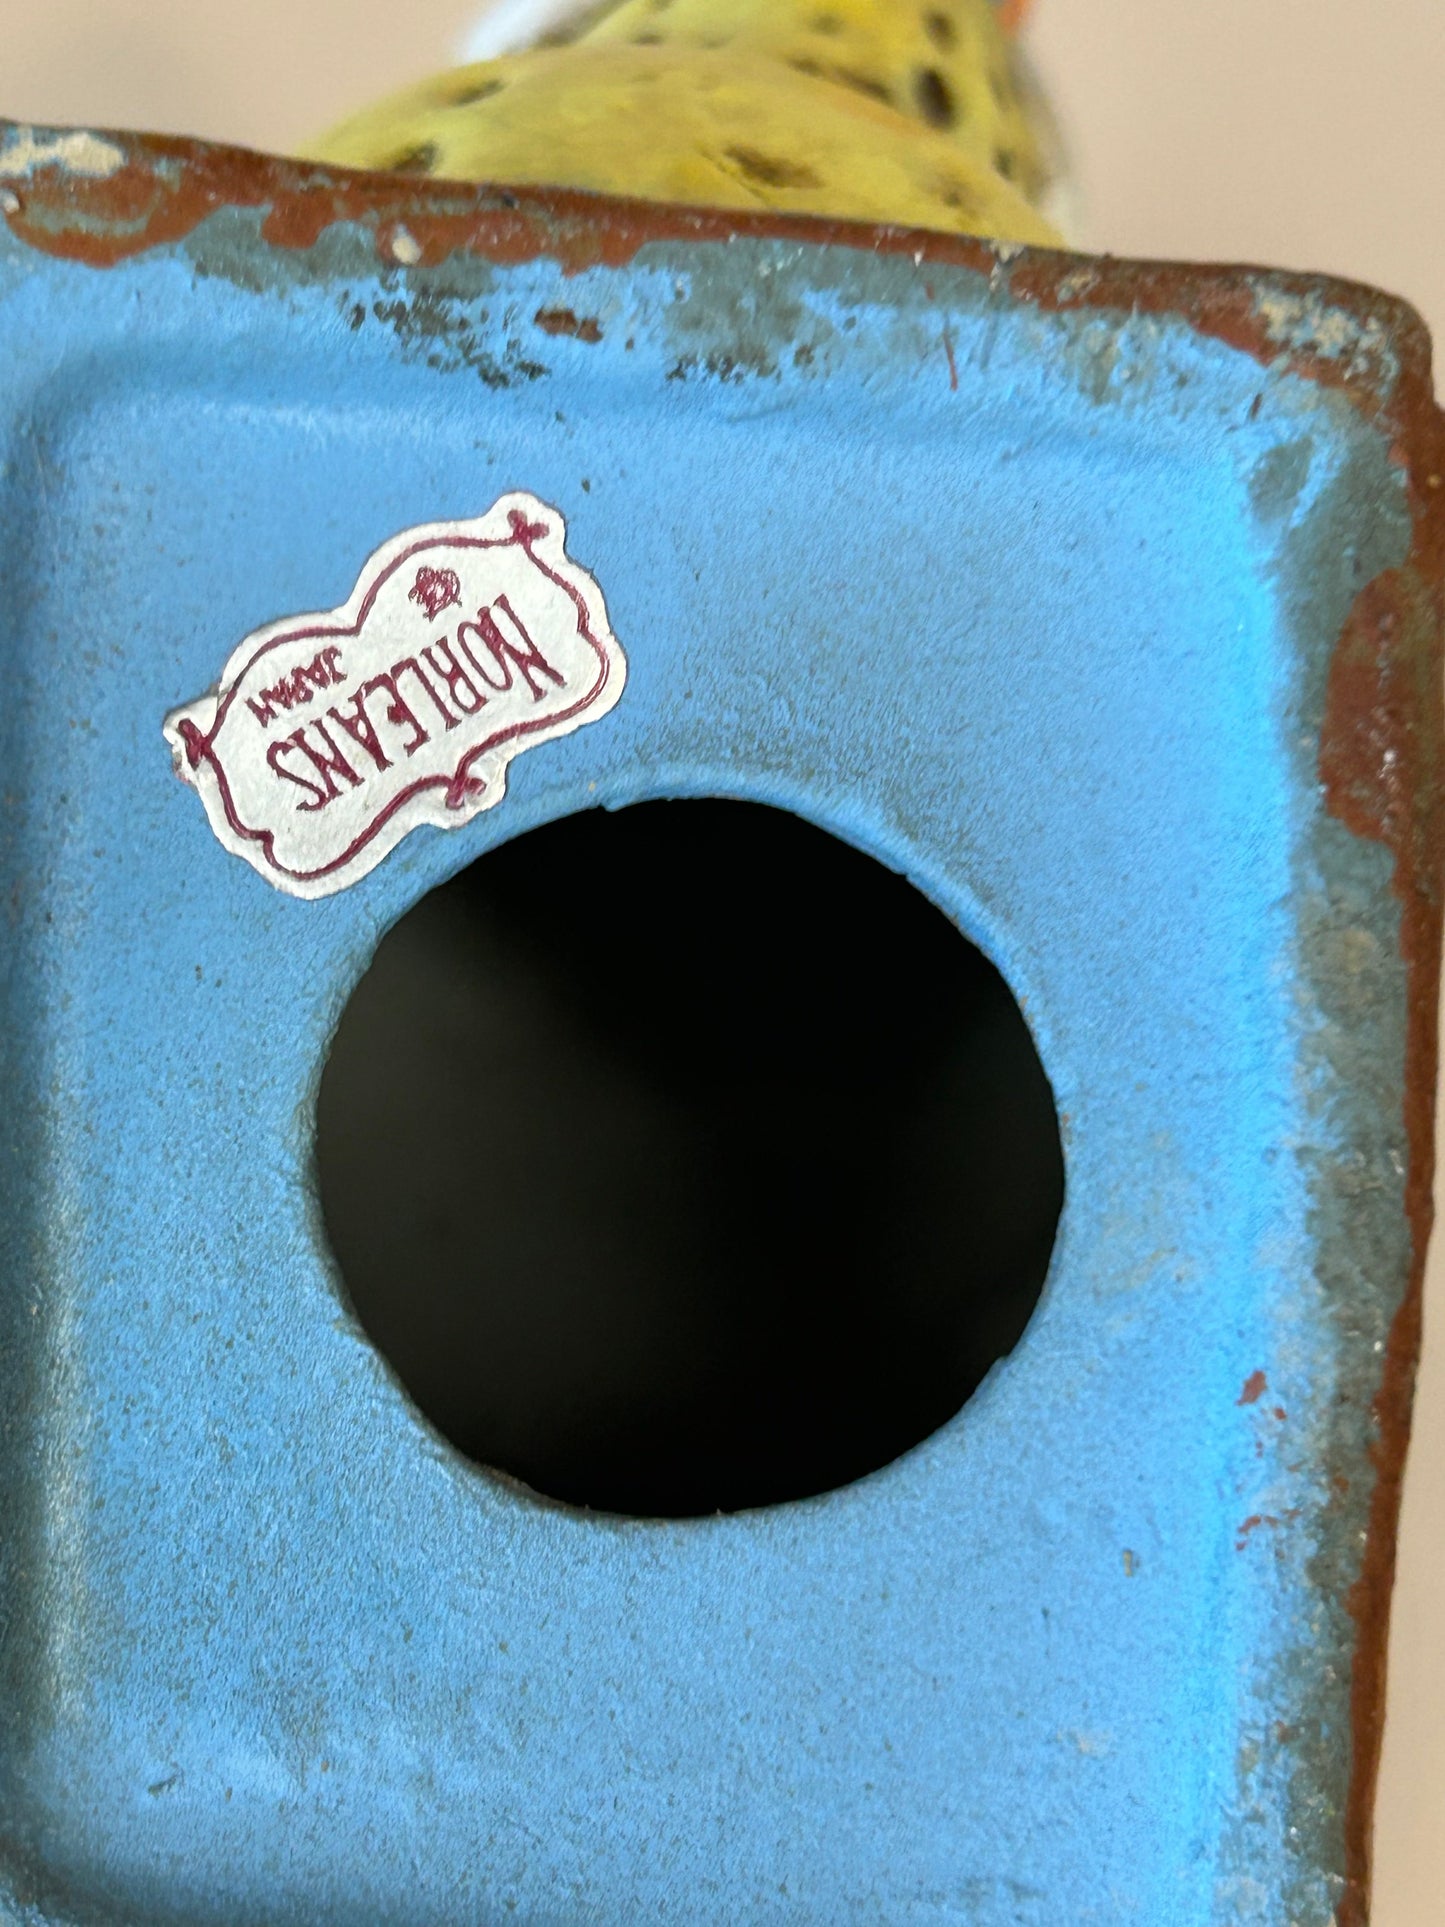 Vintage Norleans Blue Bird with Original Branding Sticker on Bottom - Good Condition